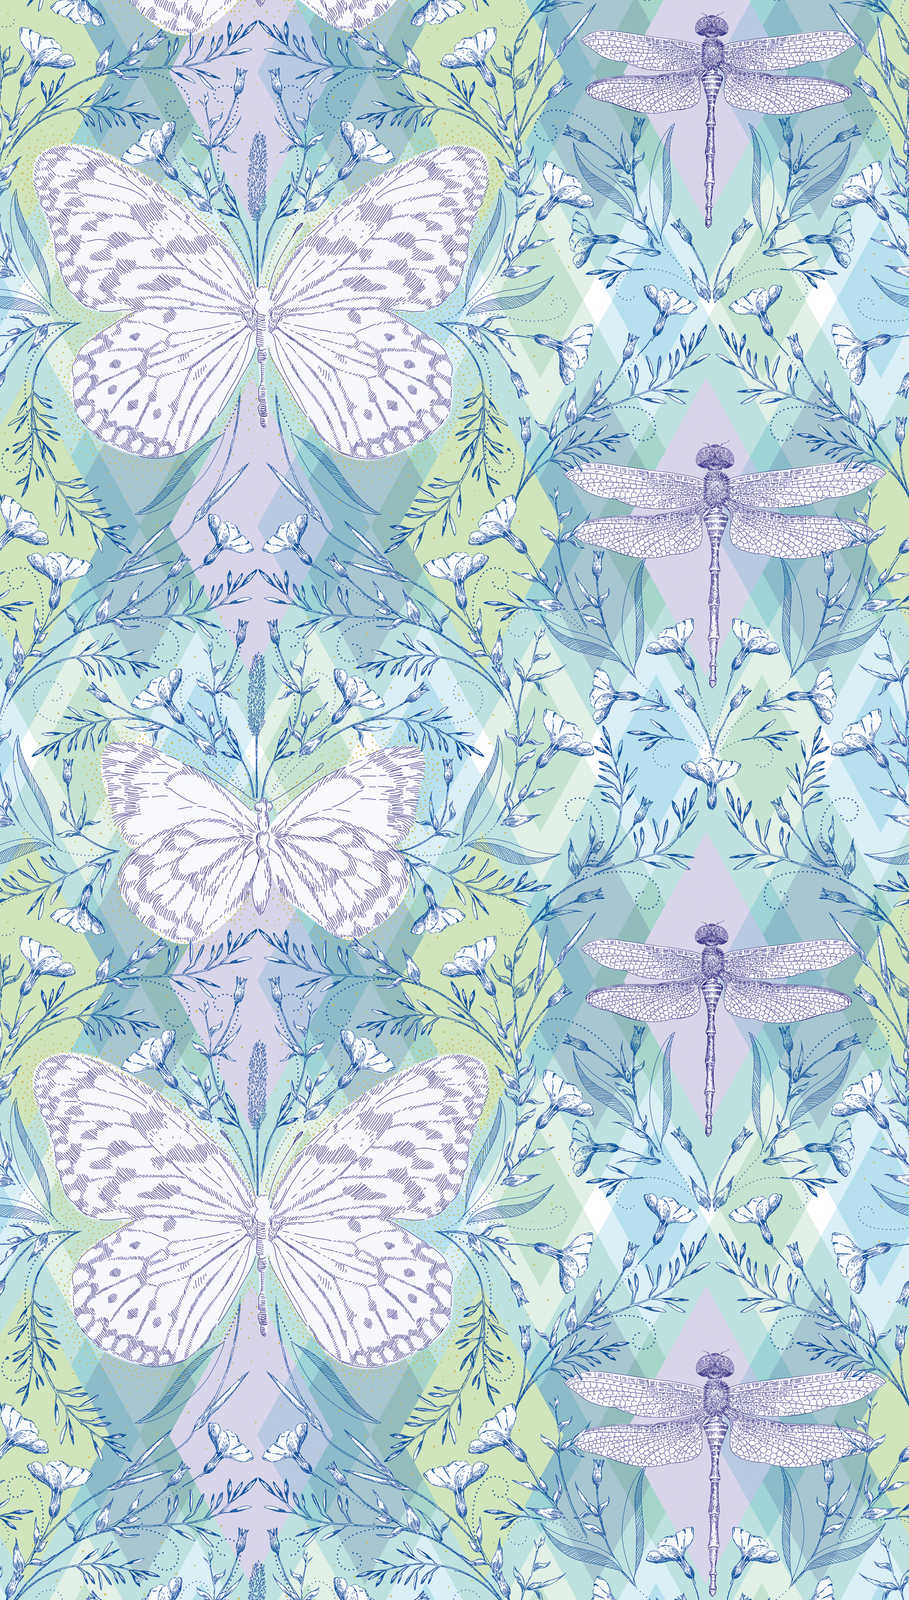             Ruitjespatroon behang met vlinders en libellen - veelkleurig, groen, paars
        